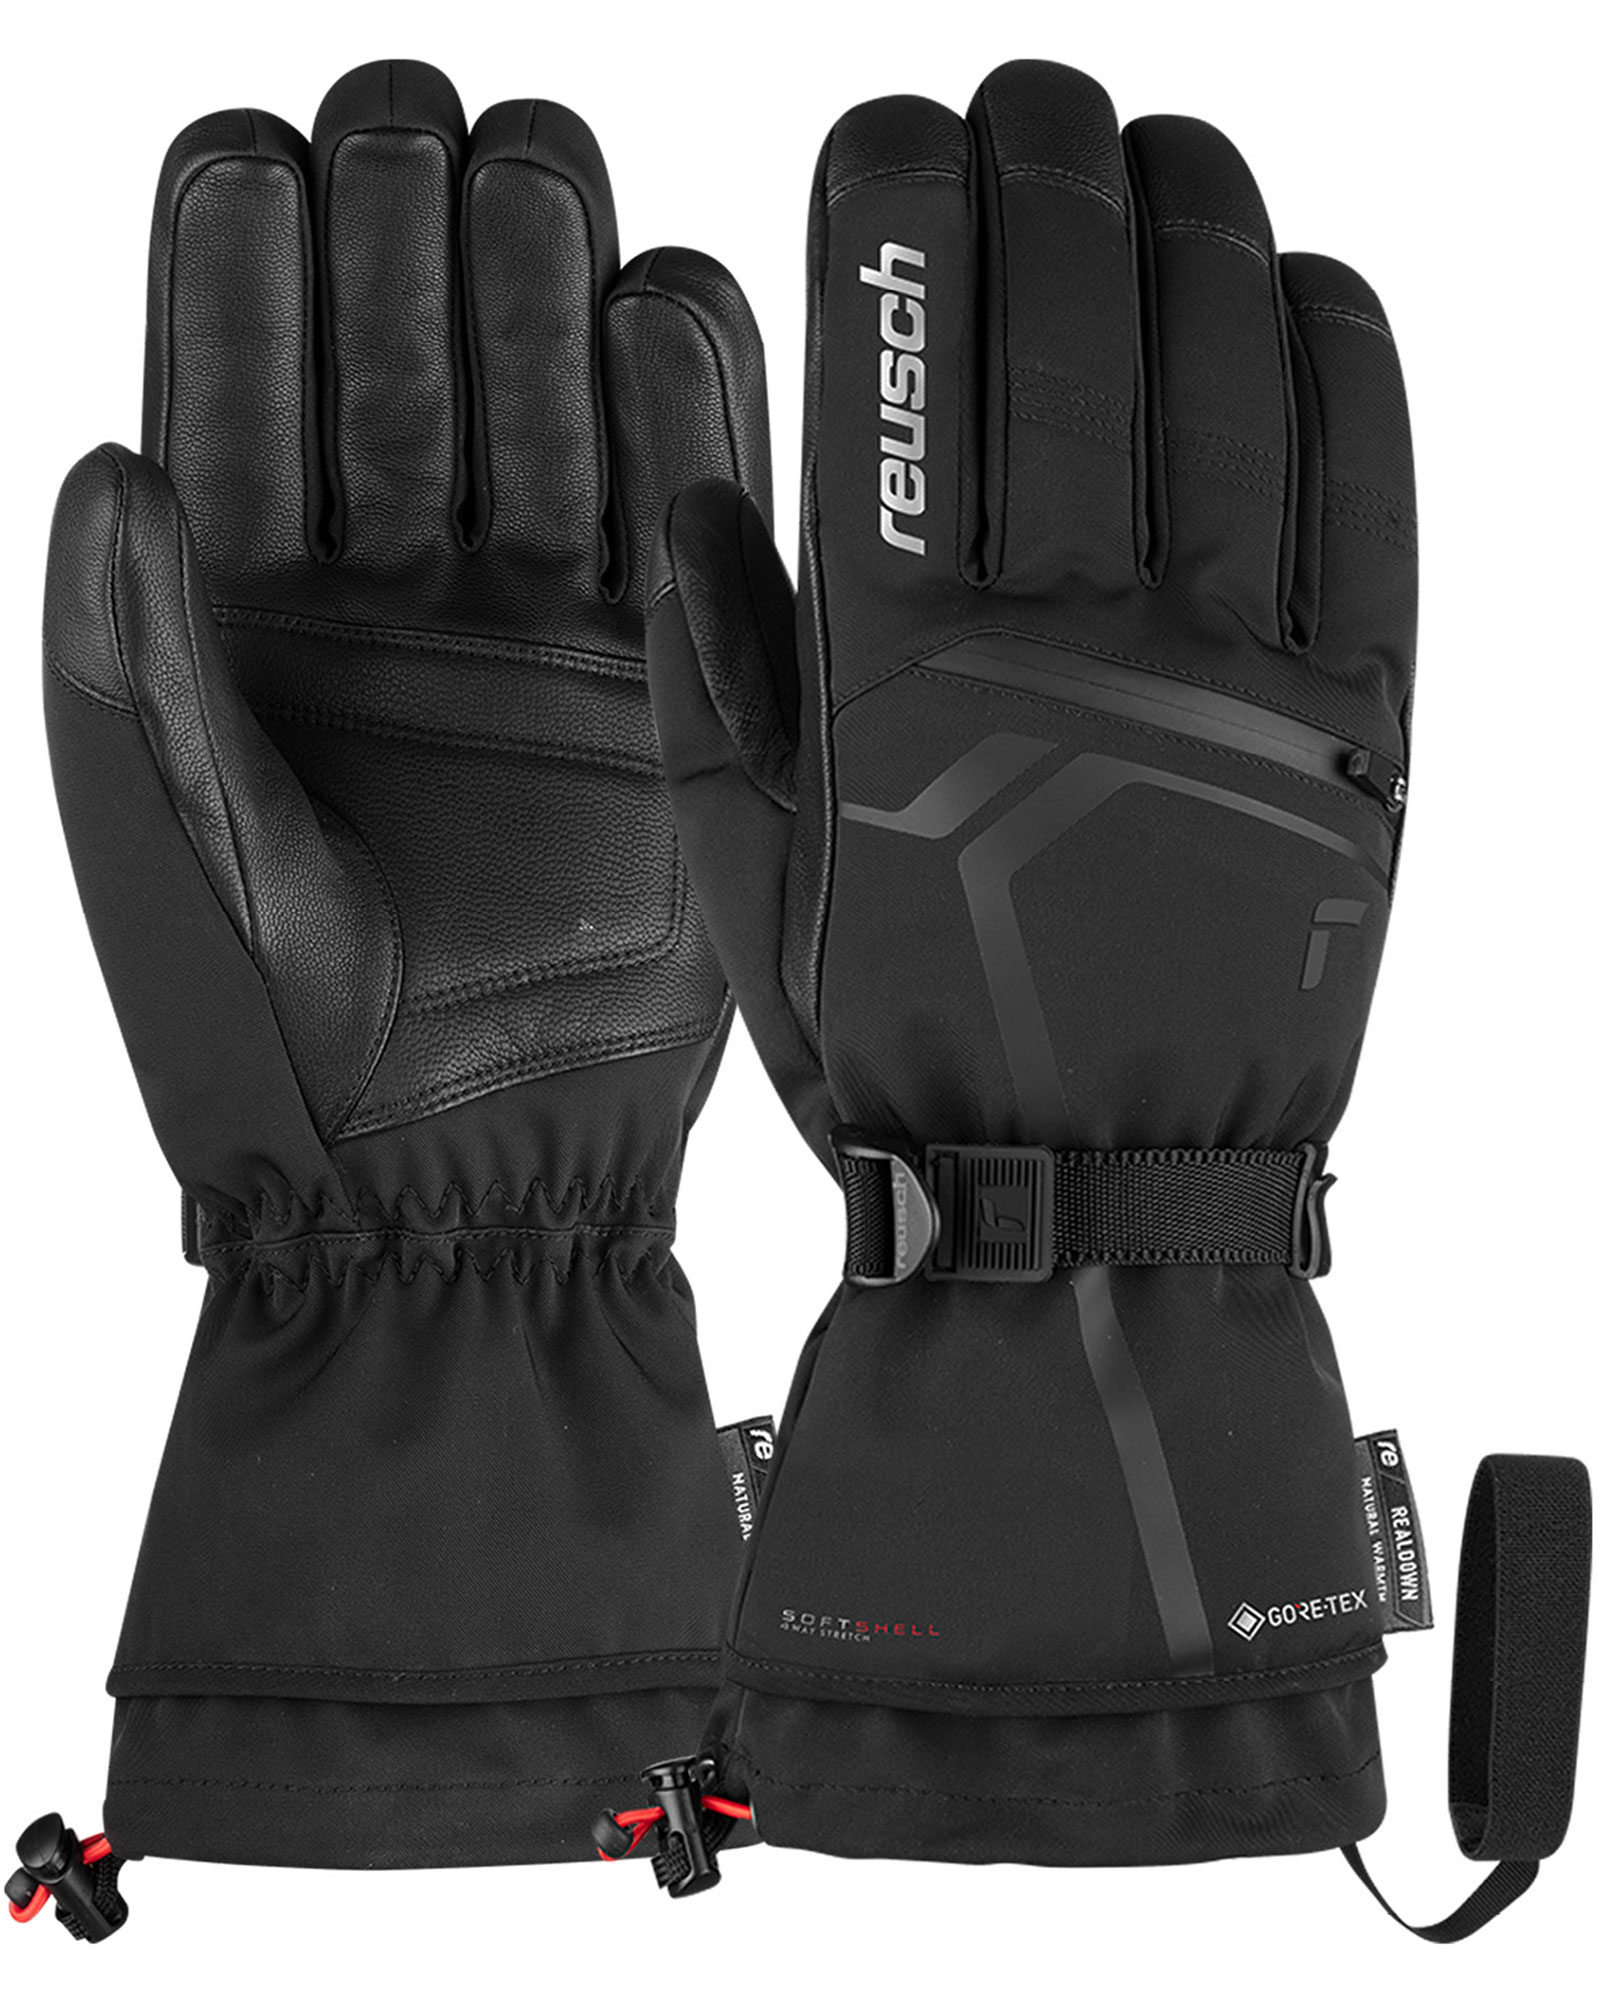 Reusch Down Spirit GORE TEX Men’s Gloves - Black/white Size 10